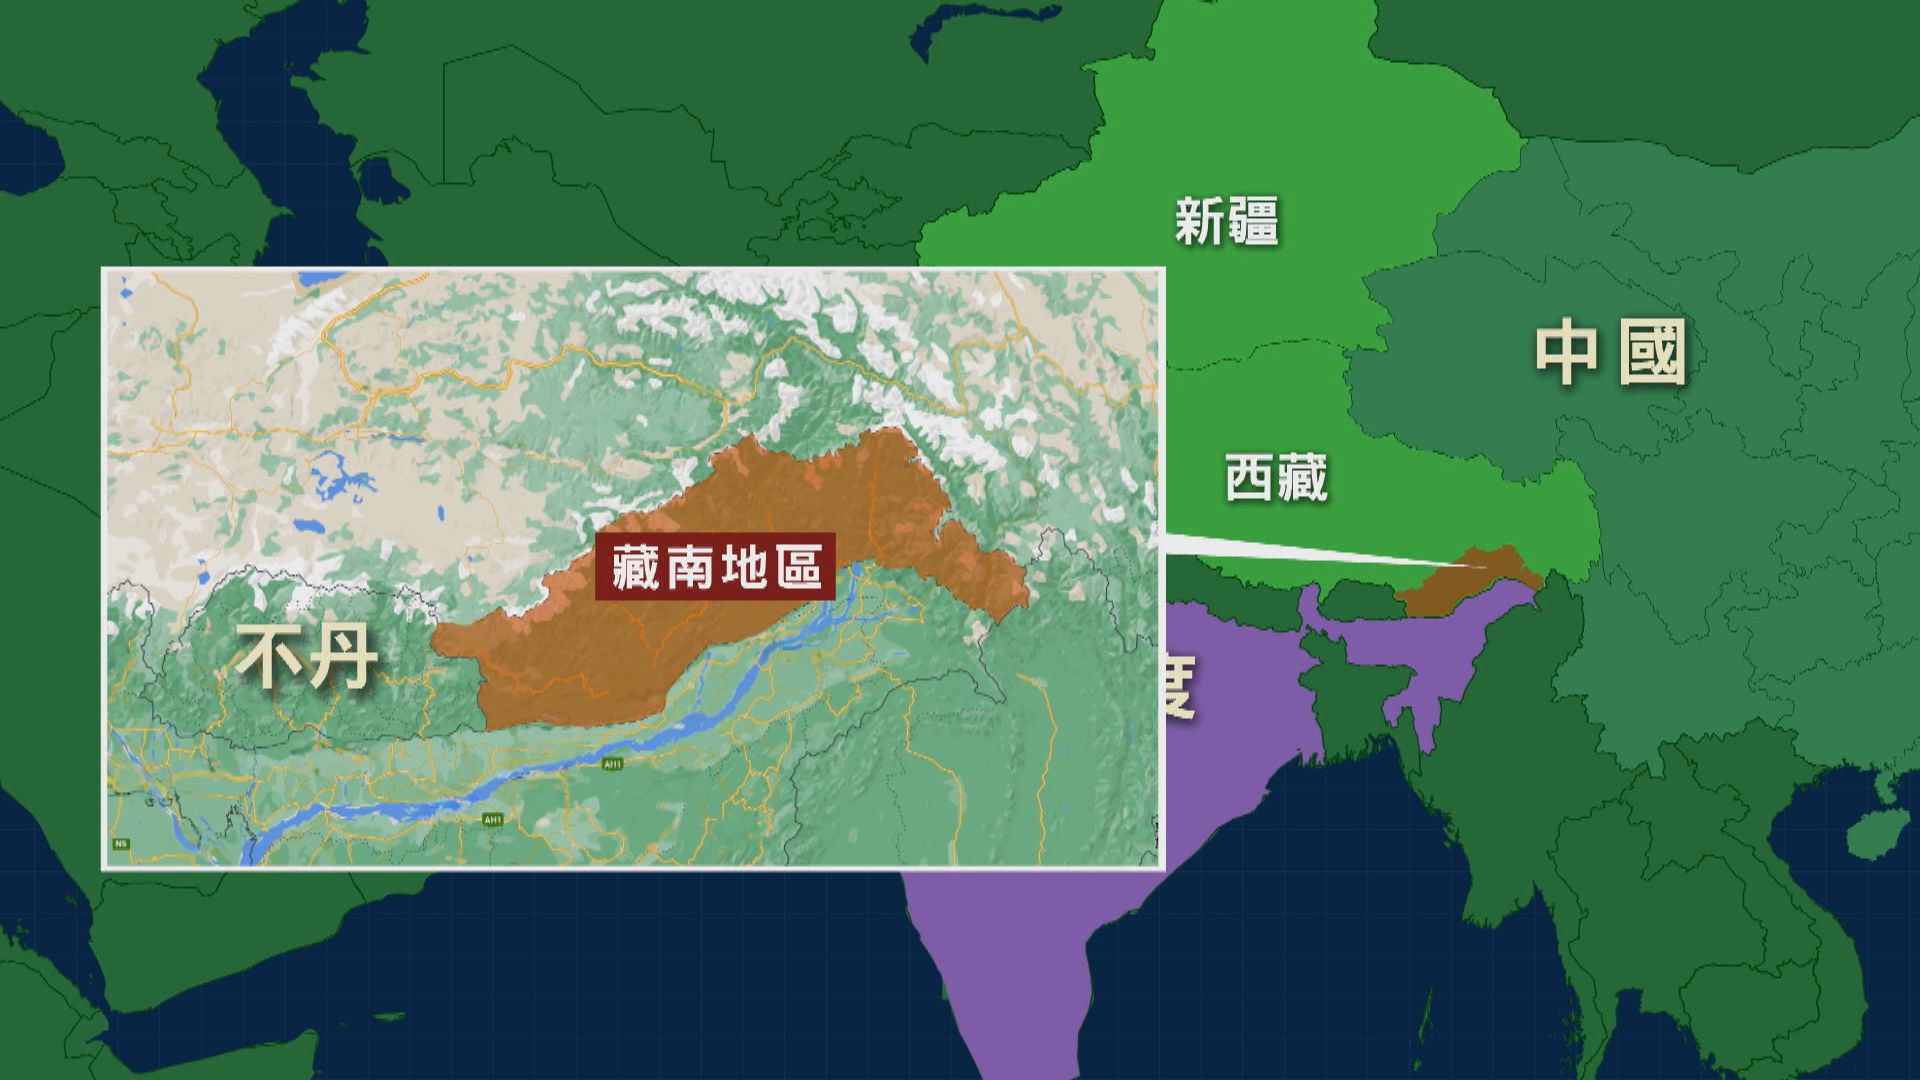 印度強烈抗議中國新版地圖包含藏南及阿克賽欽地區